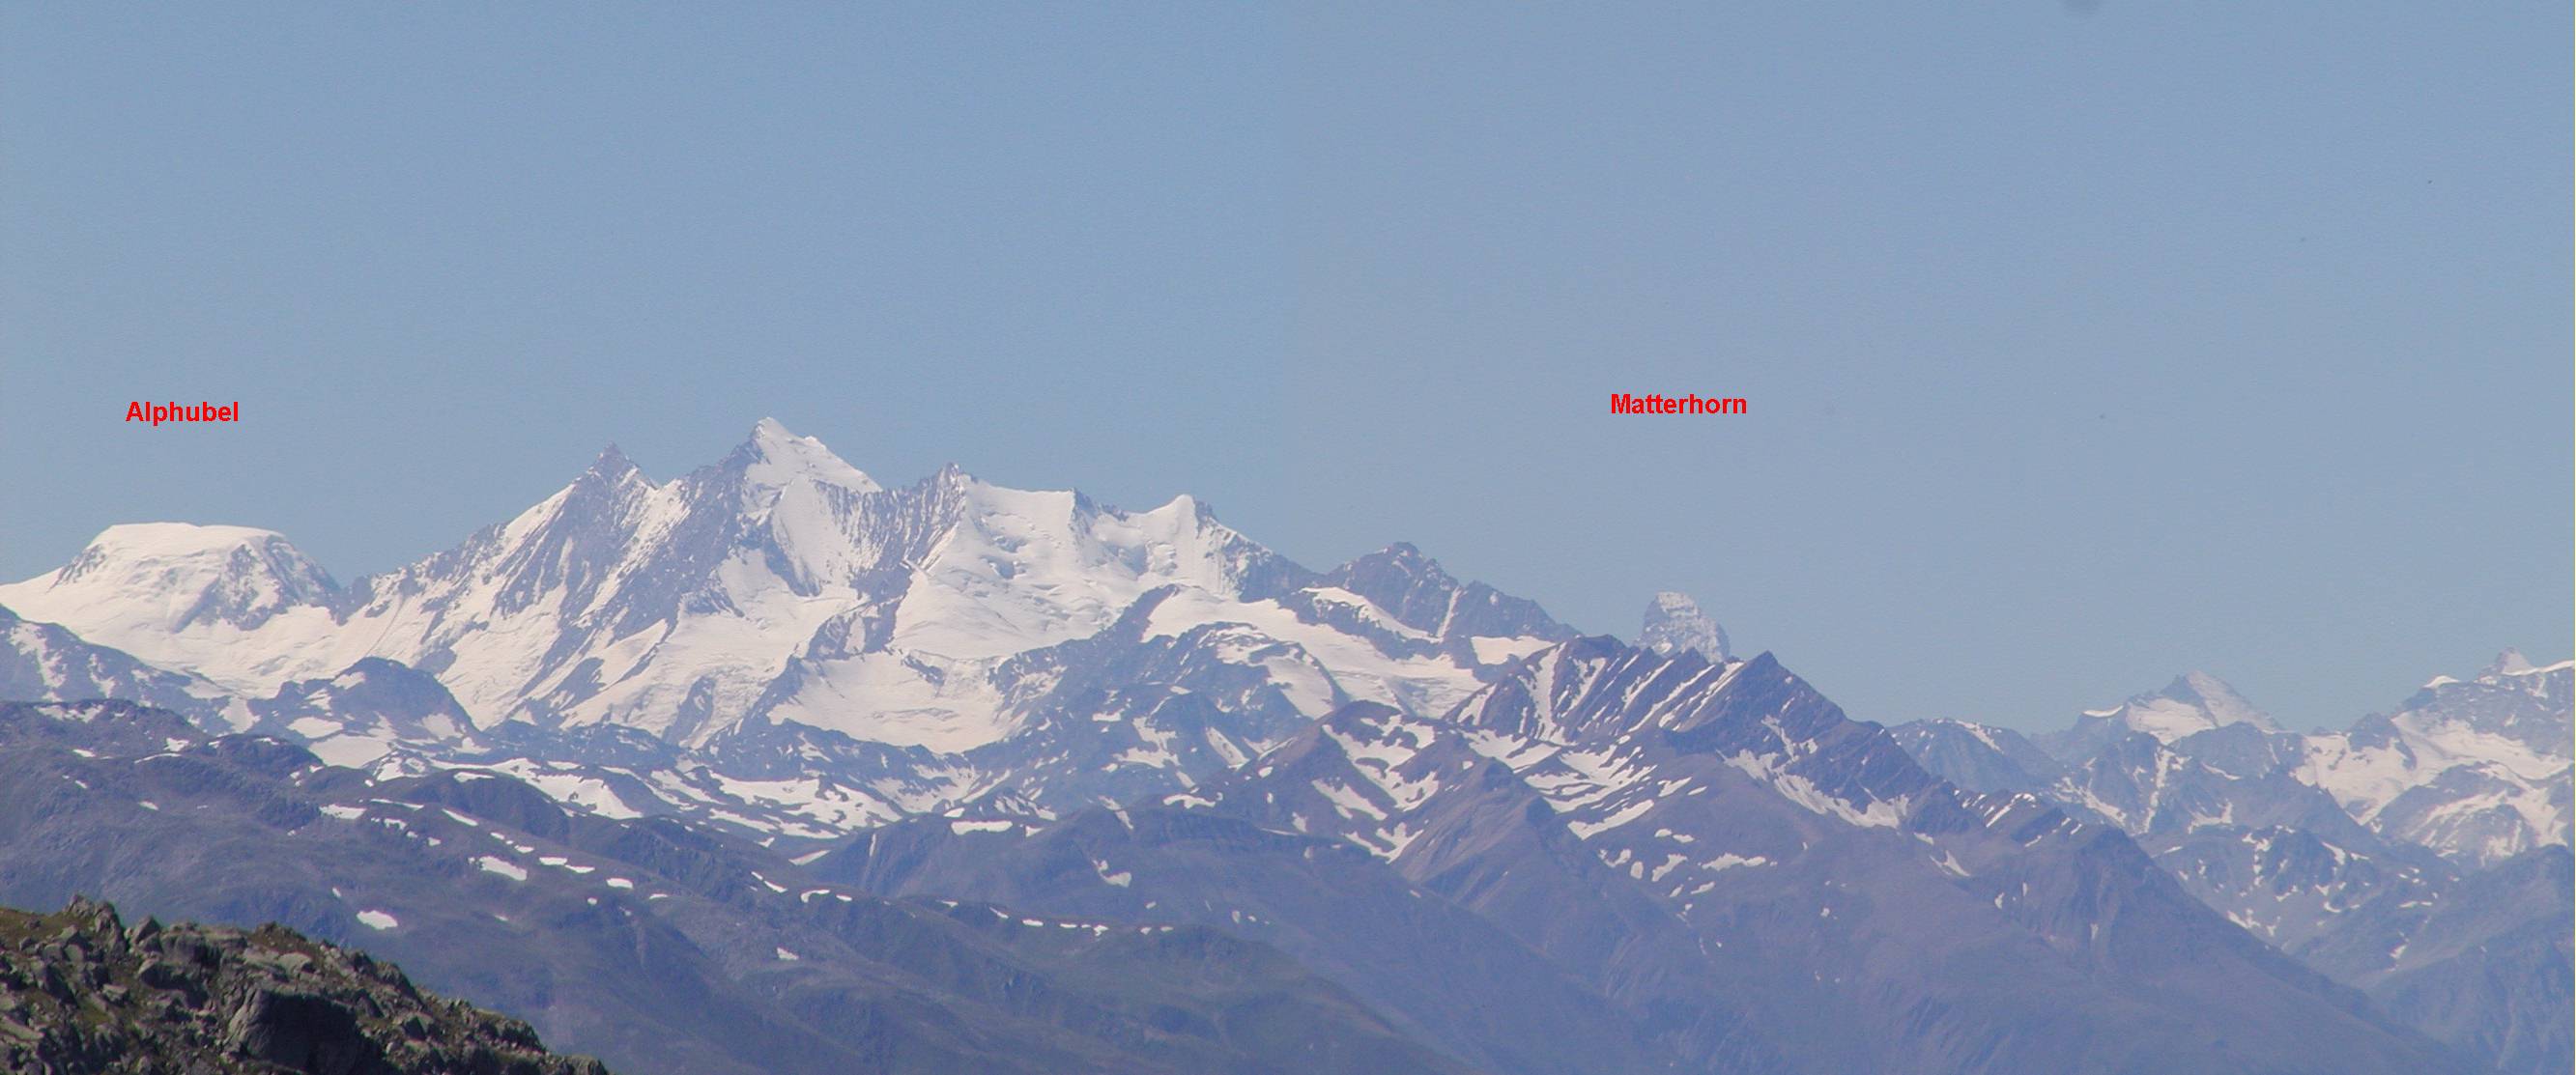 Matterhorn2: von Furkapass-Westrampe aus Alphubel bis Matterhorn